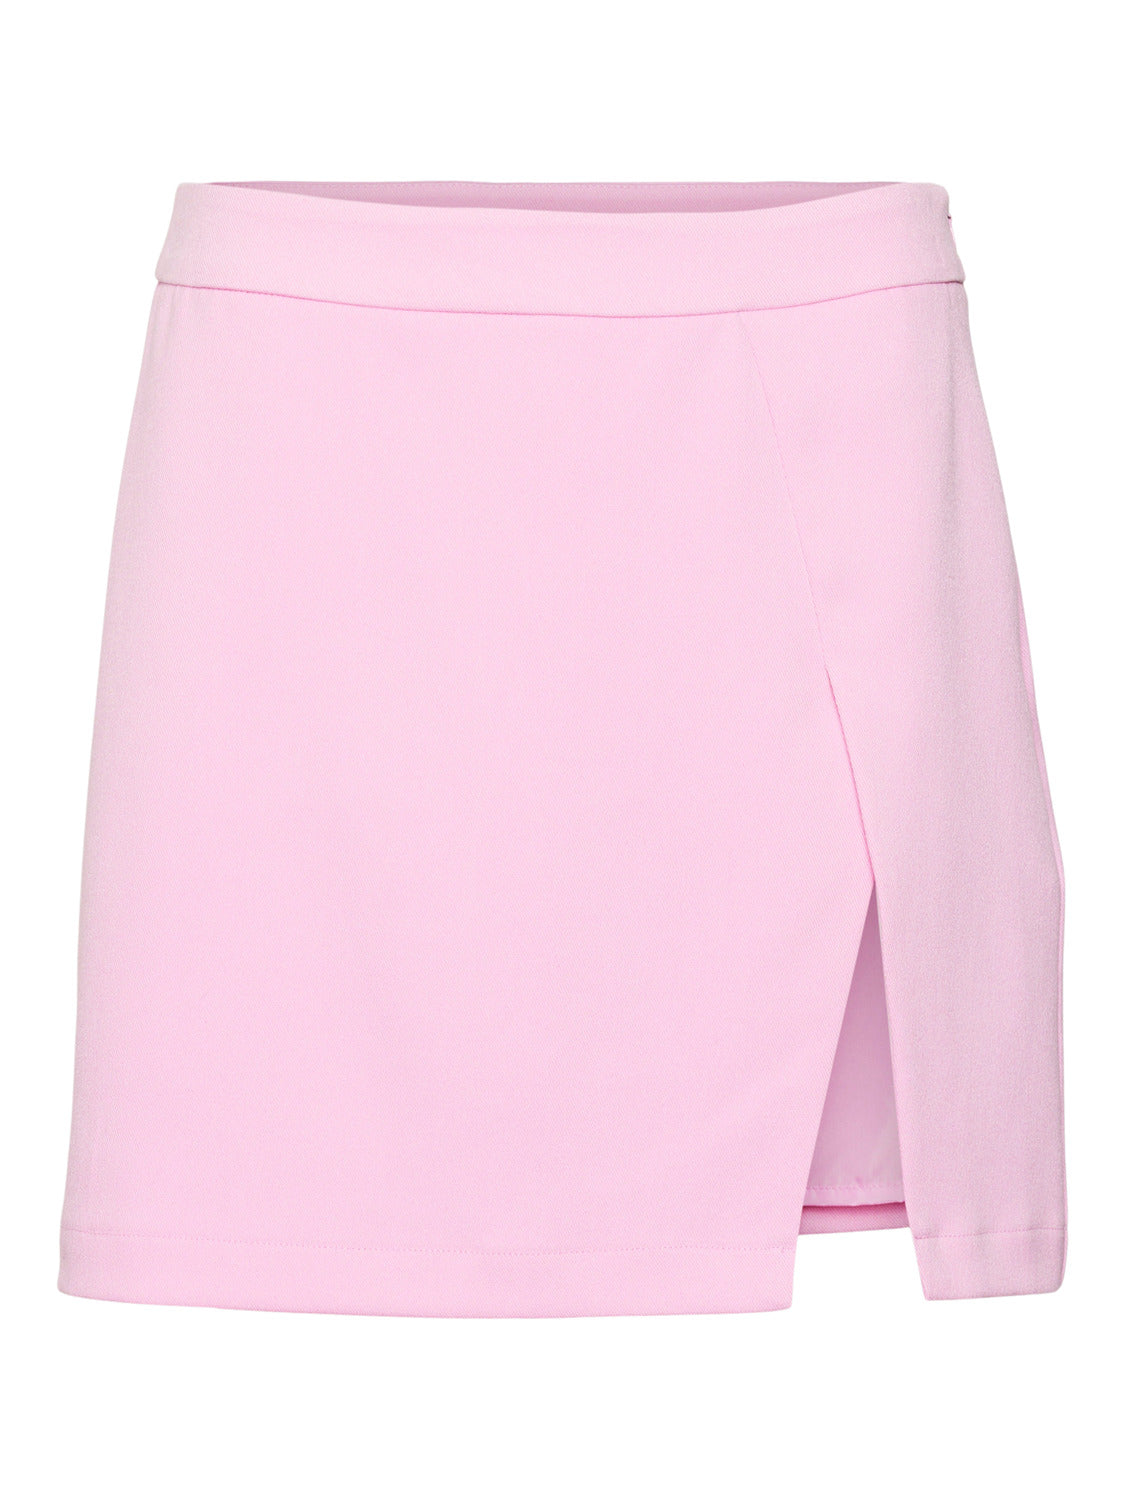 SNBILLIE Skirt - Prism Pink